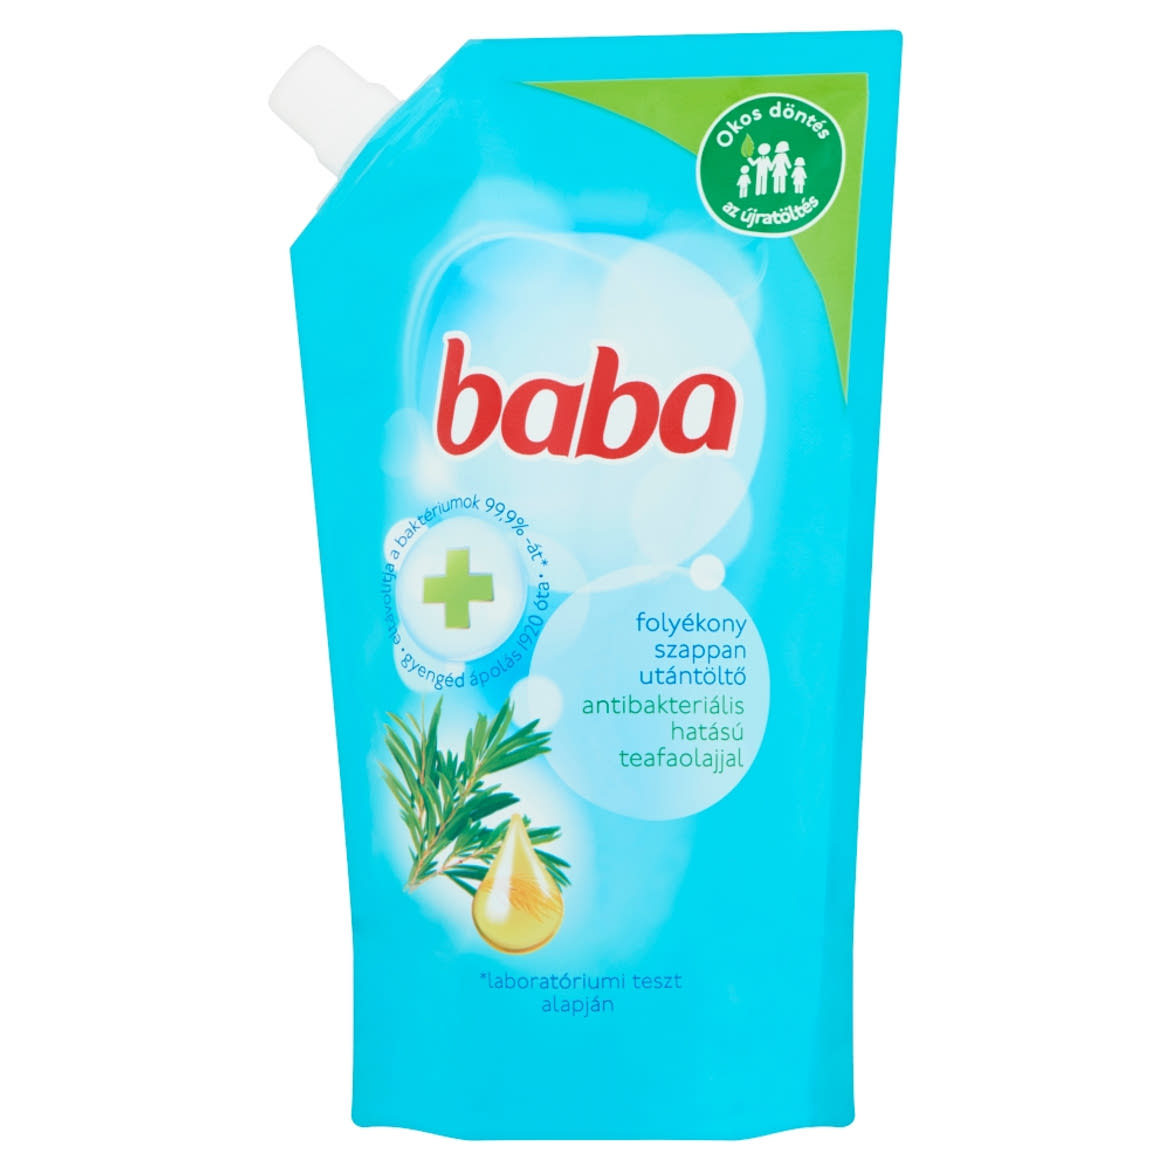 Baba folyékony szappan utántöltő antibakteriális hatású teafaolajjal